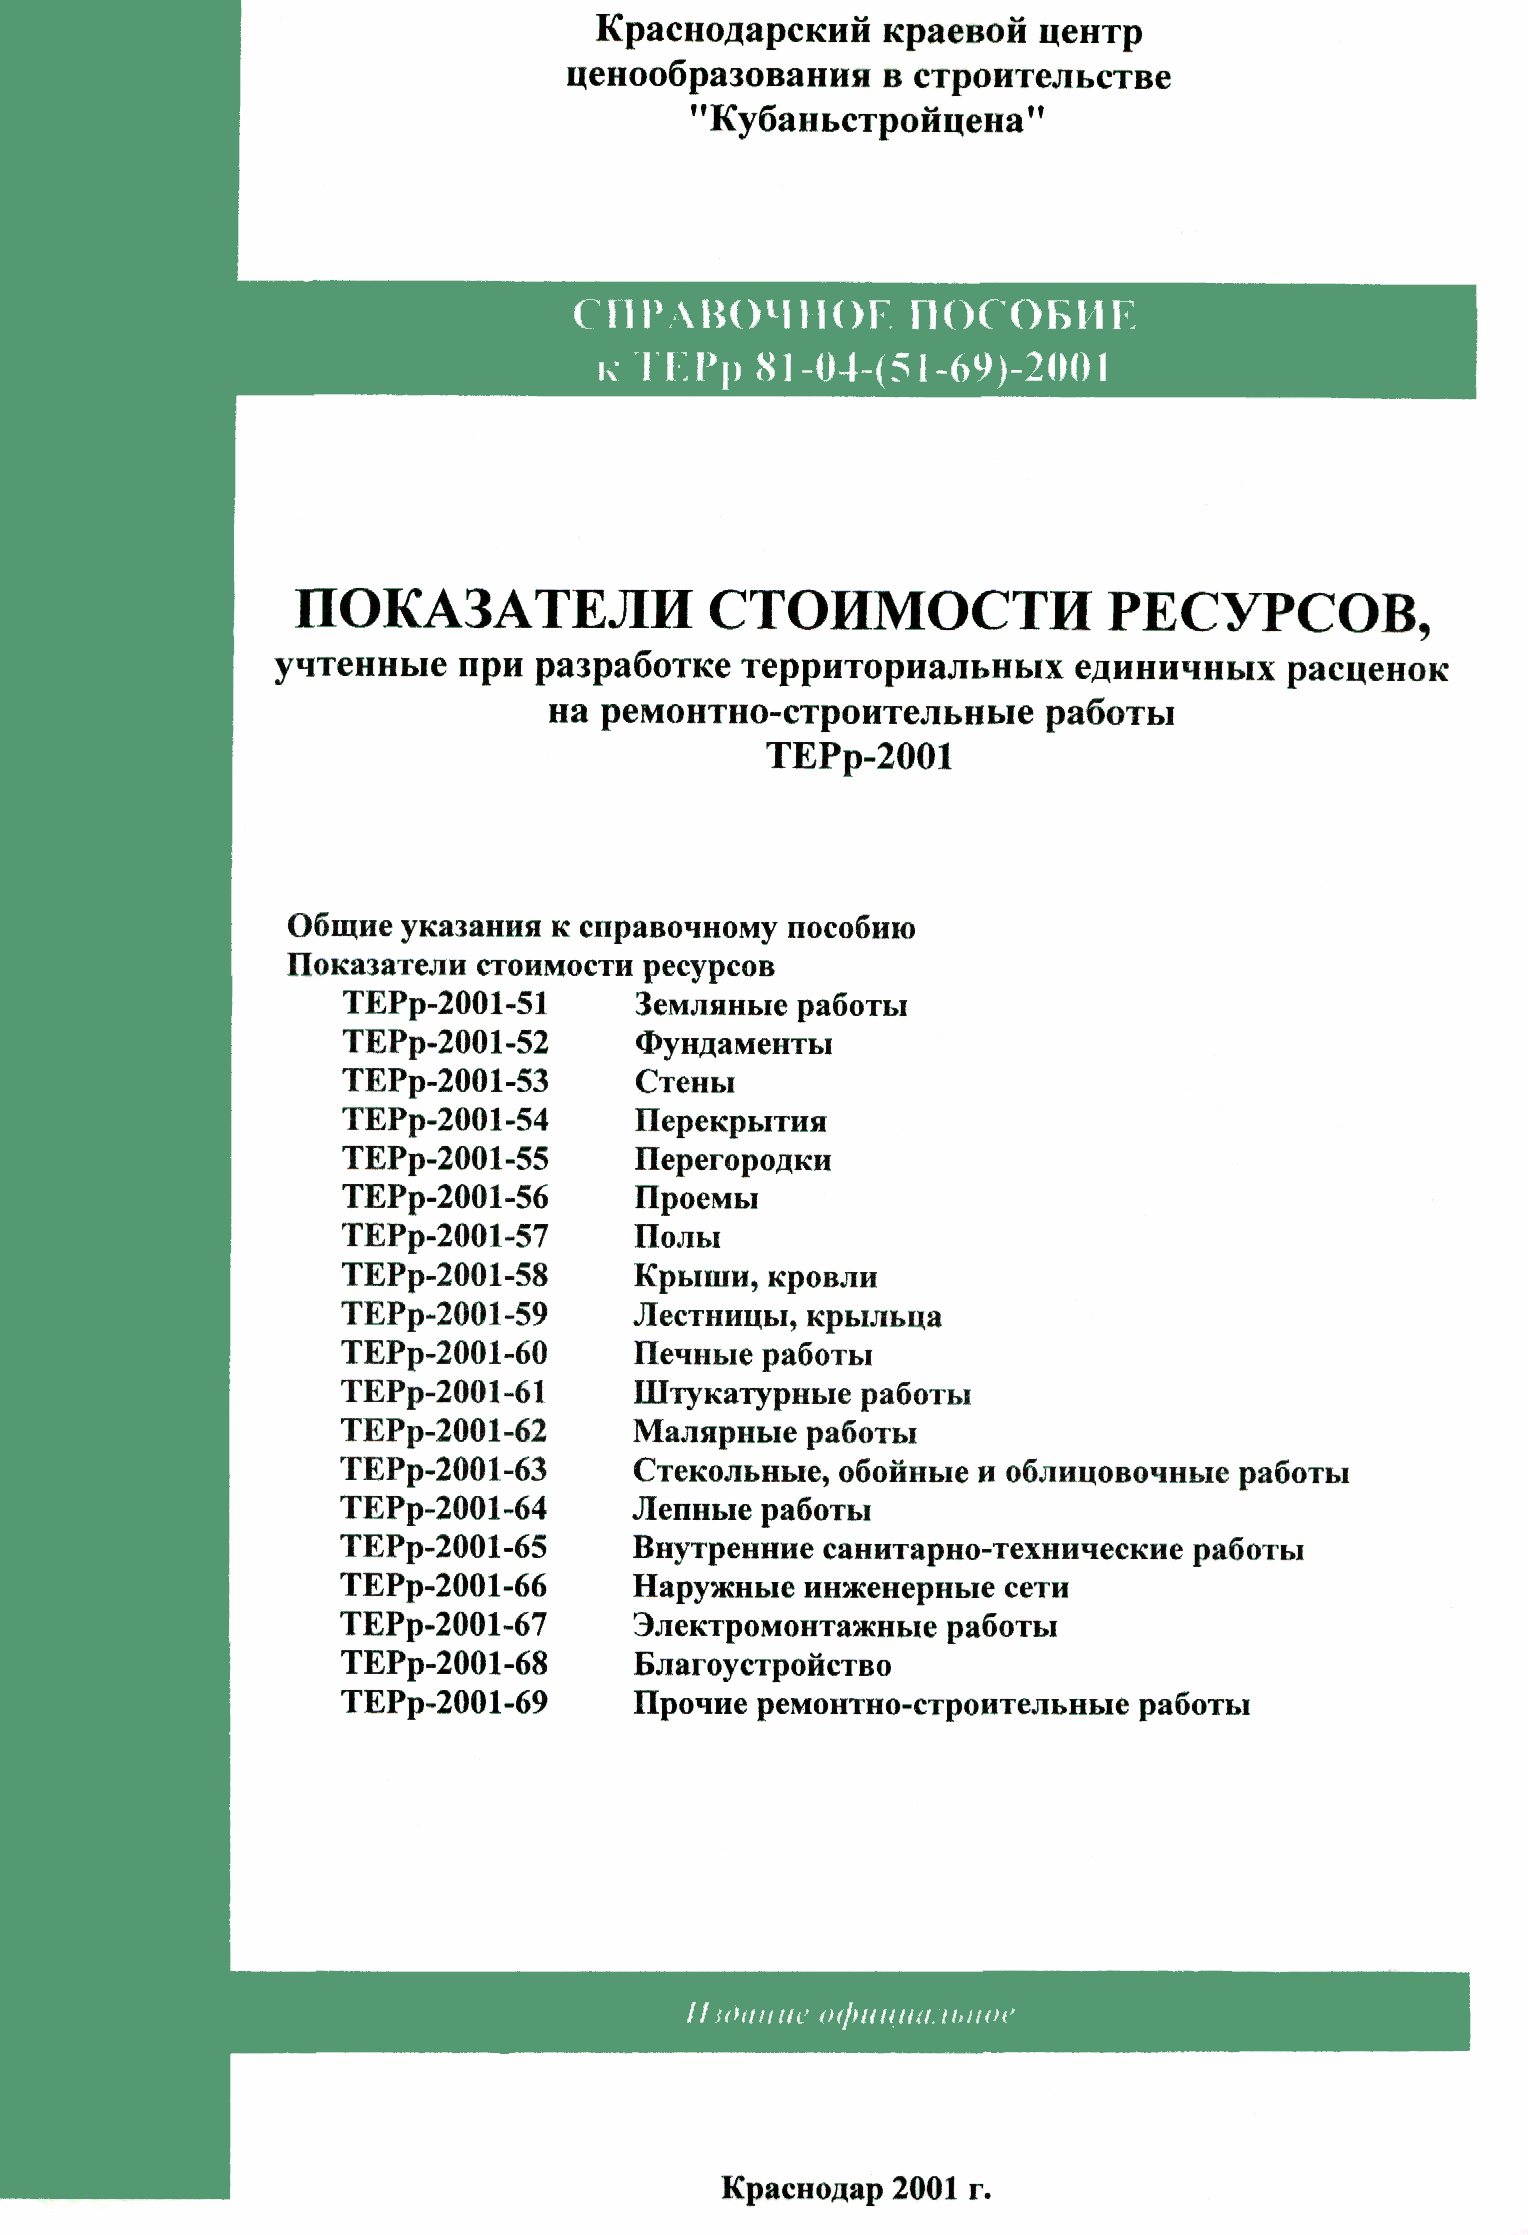 Справочное пособие к ТЕРр 81-04-60-2001